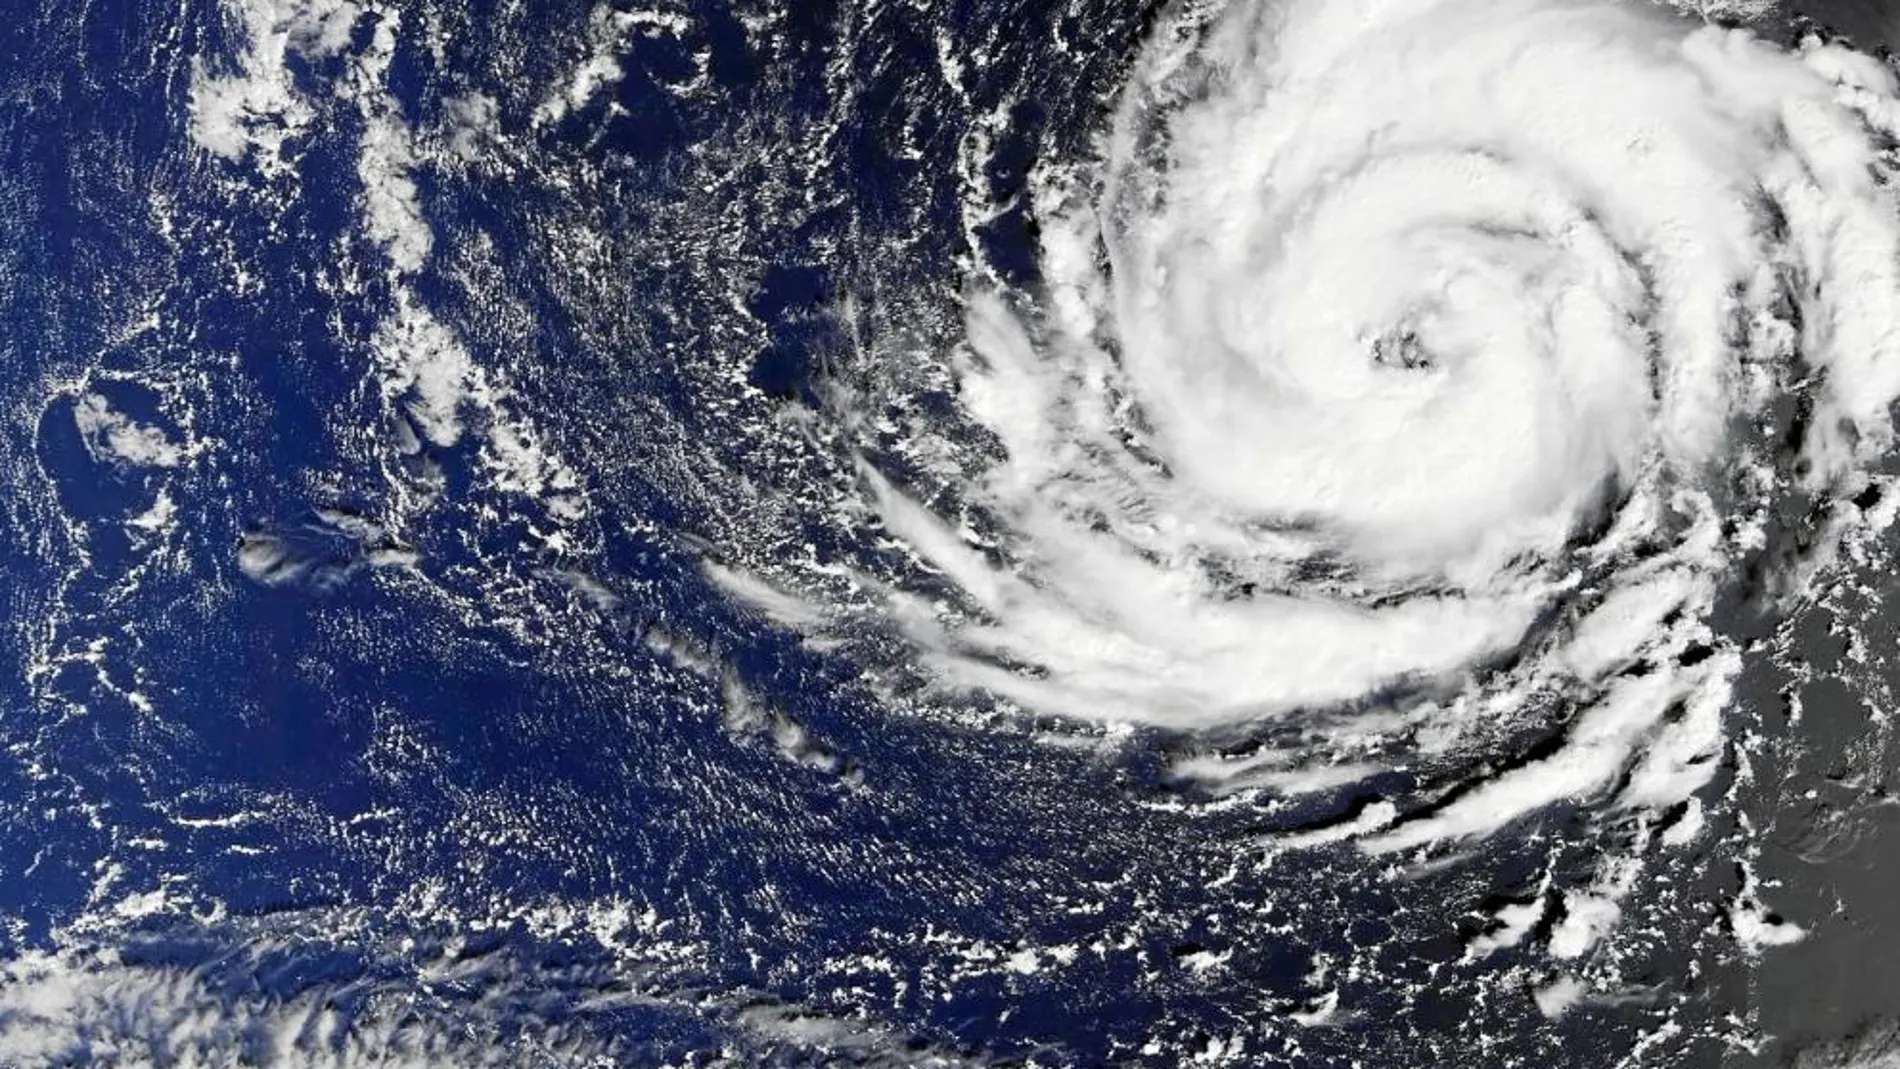 Imagen del huracán tomada por el Sentinel-3A, al suroeste de las Azores